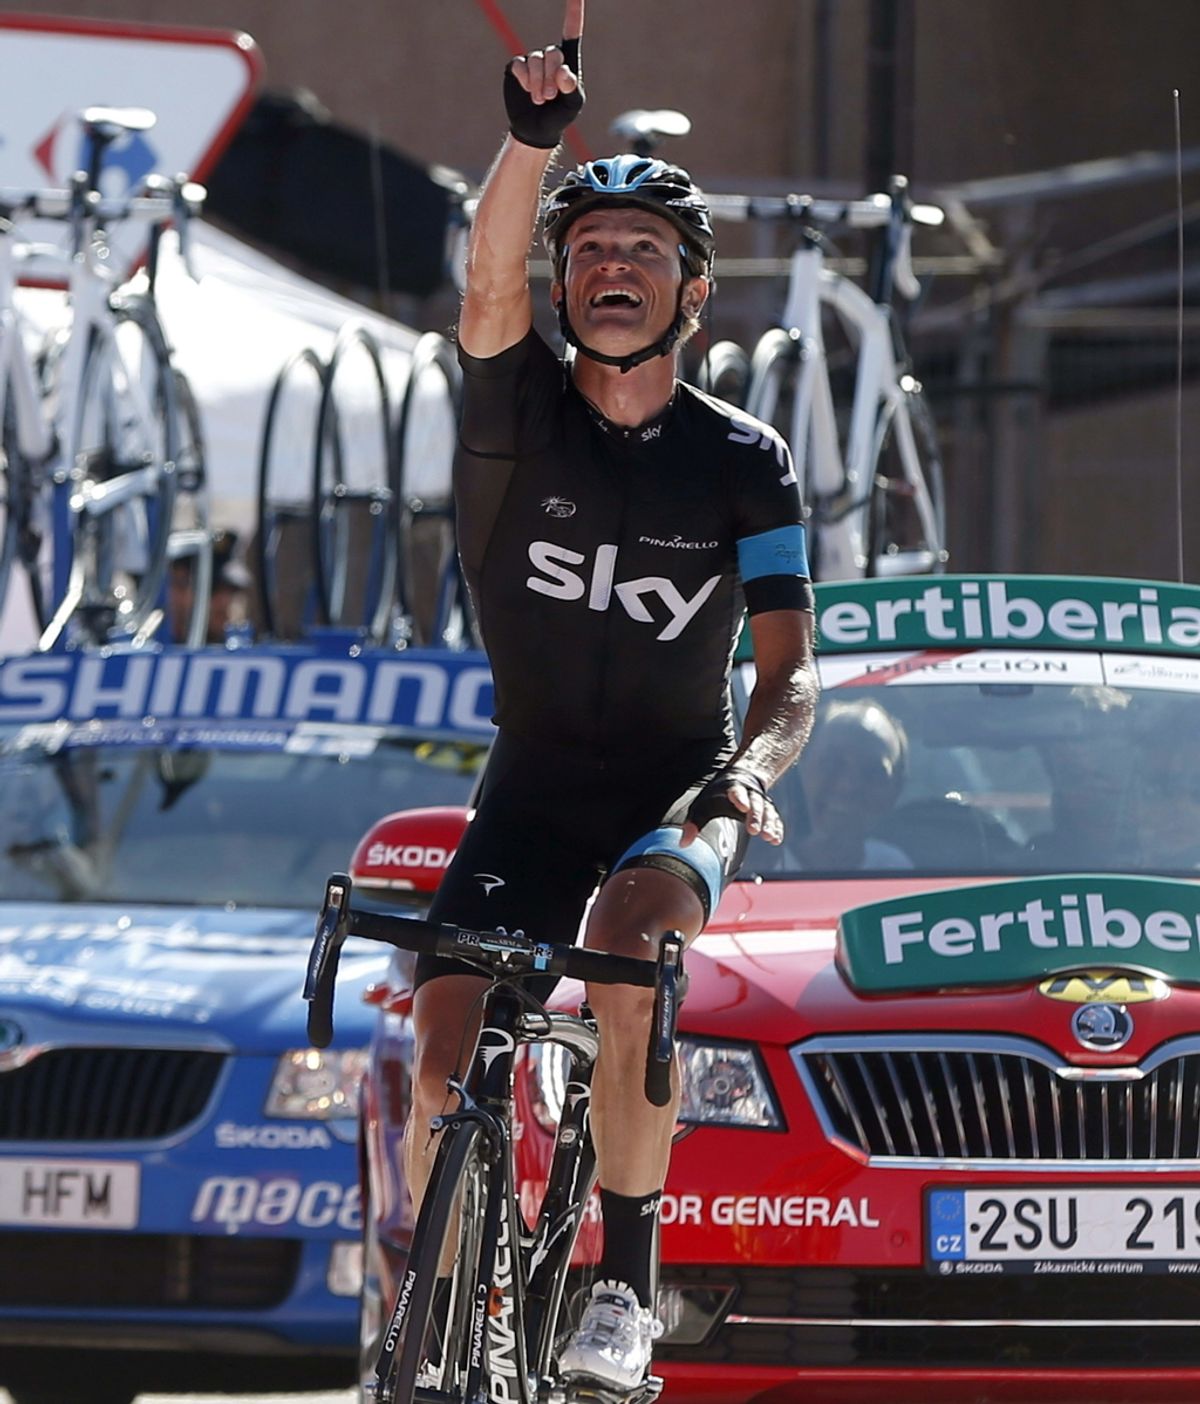 El bielorruso Vasil Kiryienka (Sky) se impuso en solitario la decimoctava etapa de la Vuelta disputada entre Burgos y Peña Cabarga